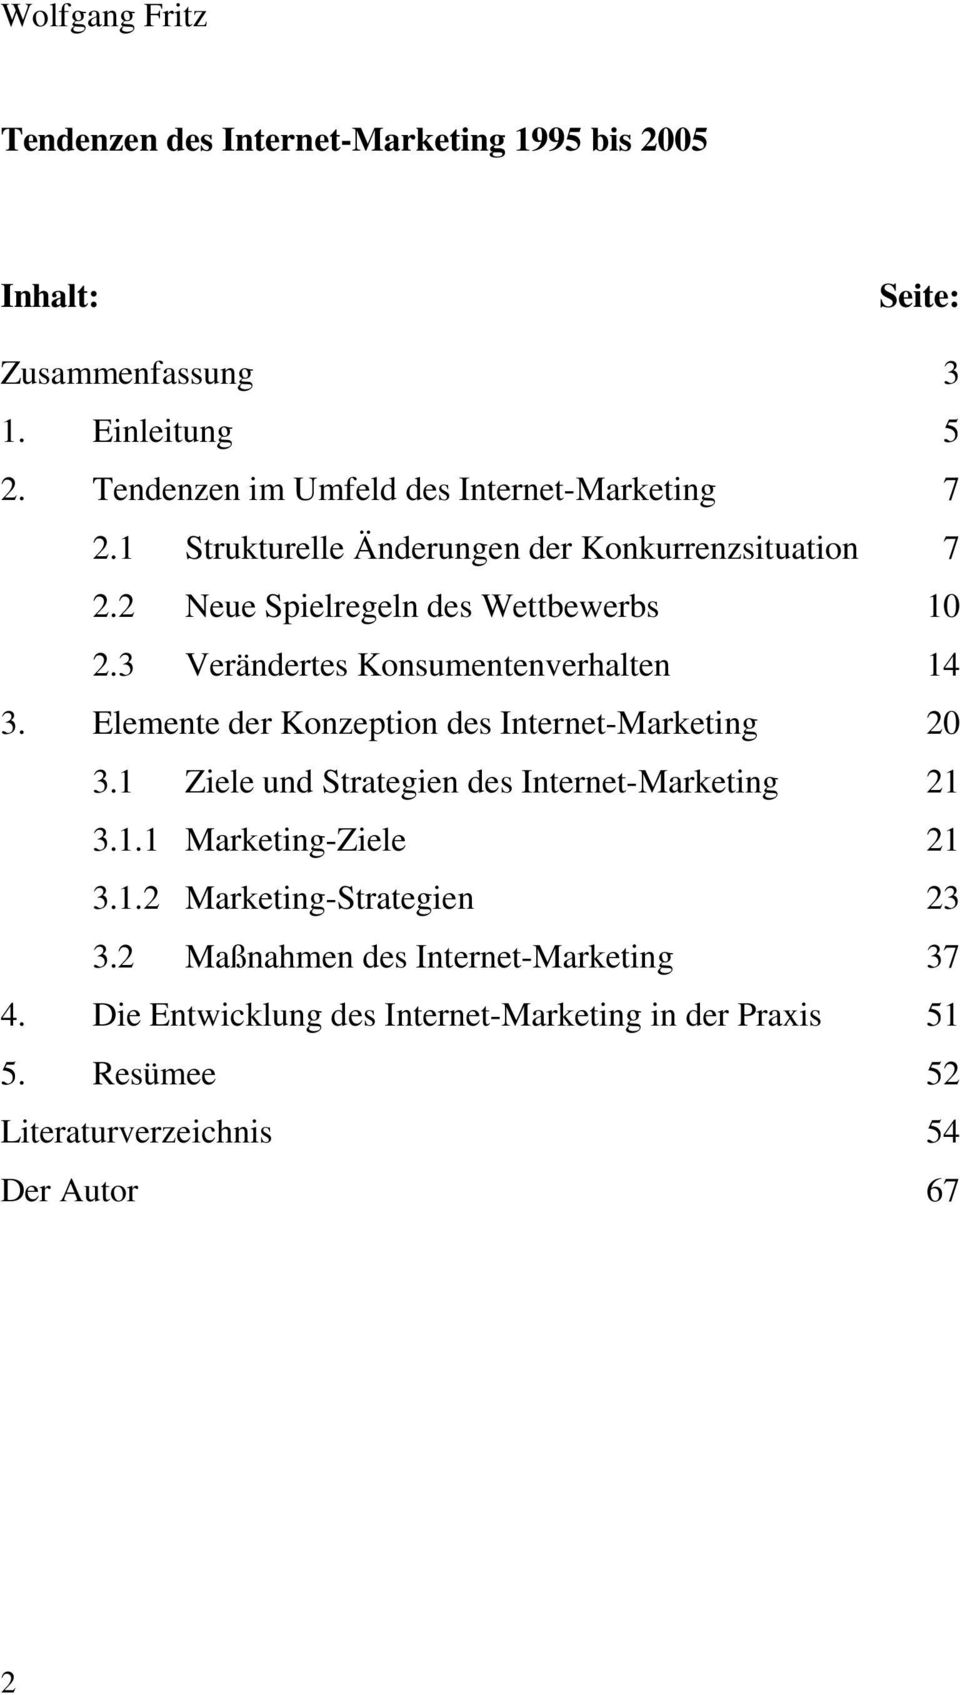 3 Verändertes Konsumentenverhalten 14 3. Elemente der Konzeption des Internet-Marketing 20 3.1 Ziele und Strategien des Internet-Marketing 21 3.1.1 Marketing-Ziele 21 3.